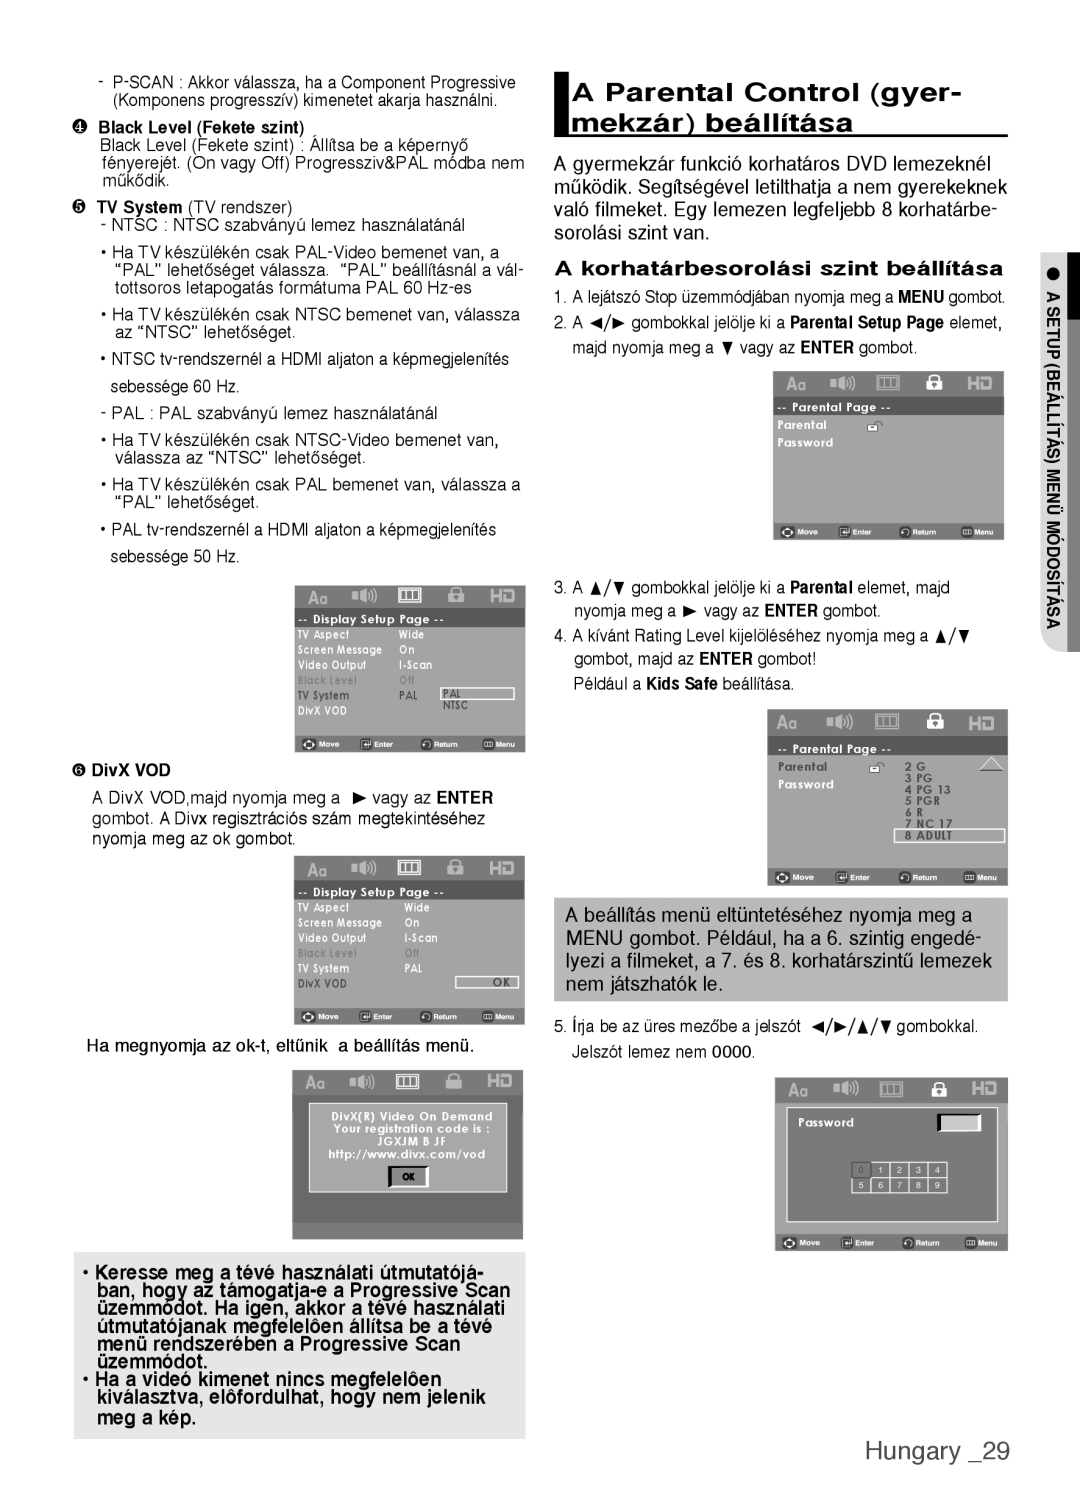 Samsung DVD-H1080W/EDC manual A Parental Control gyer- mekzár beállítása, Hungary, A korhatárbesorolási szint beállítása 